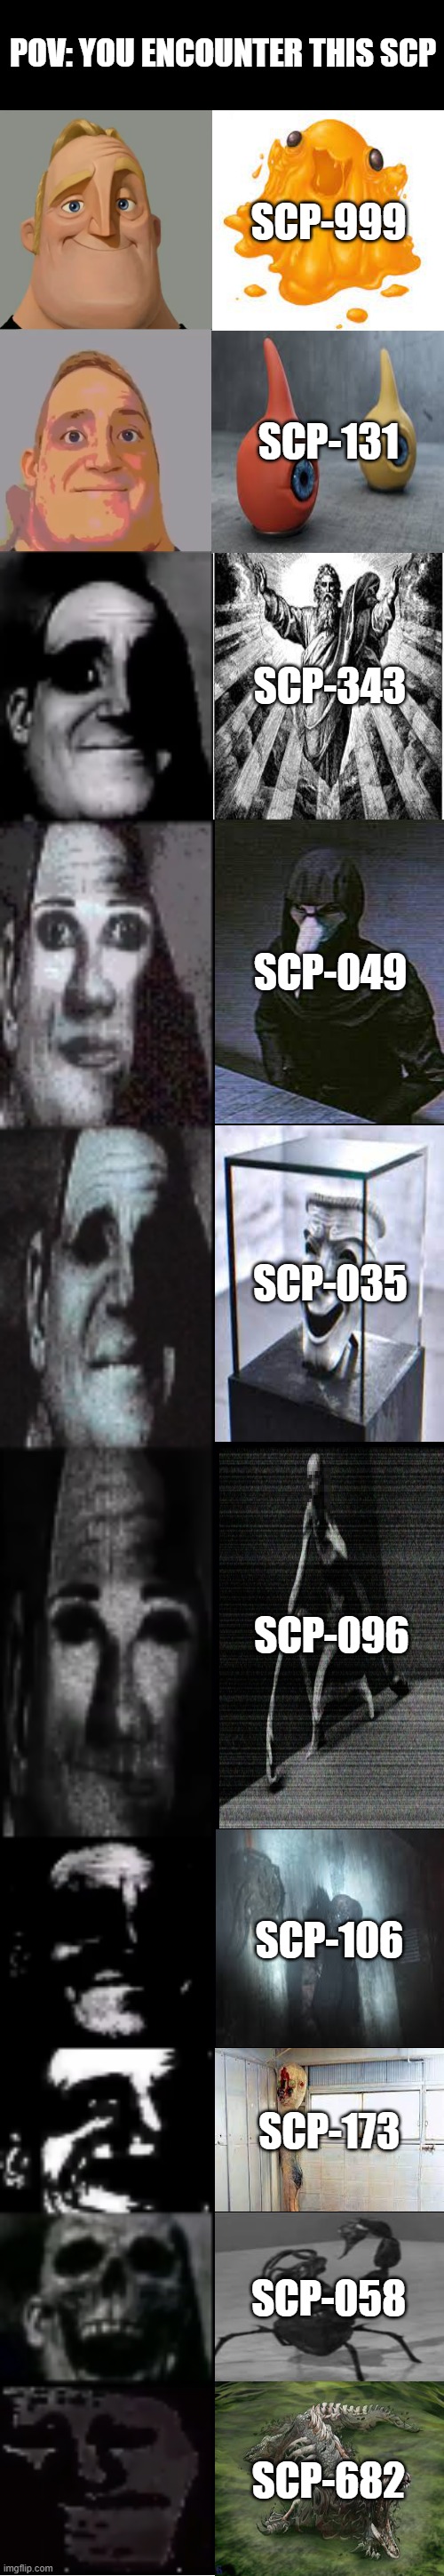 POV You saw SCP-096 face 